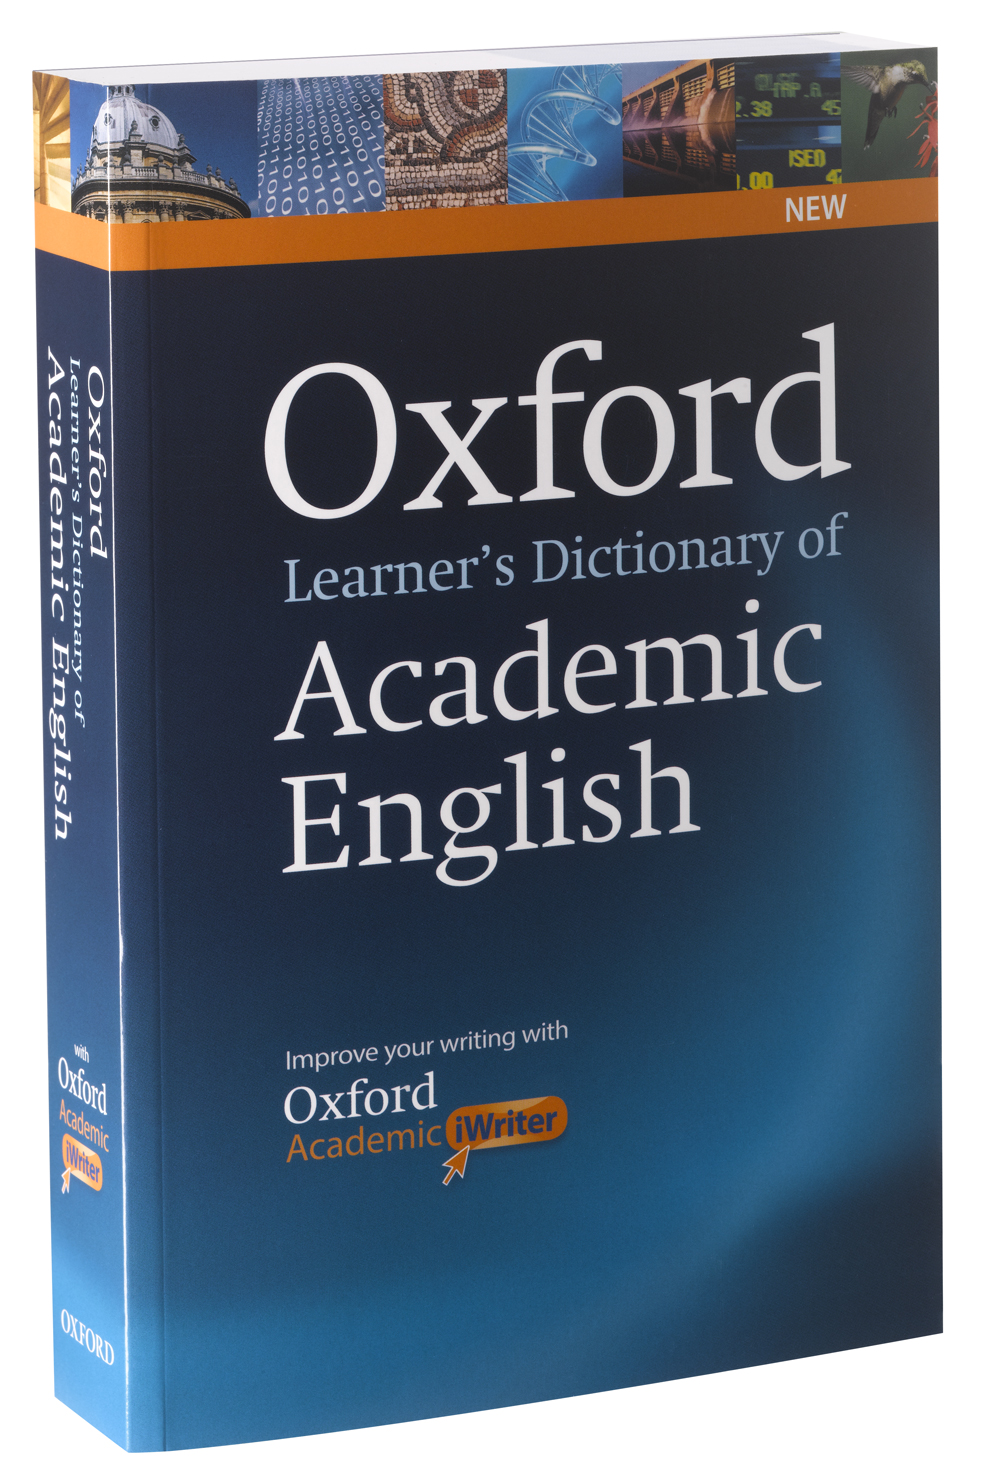 □02)【同梱】The Oxford English Dictionary 全13巻セット/補遺/OED 